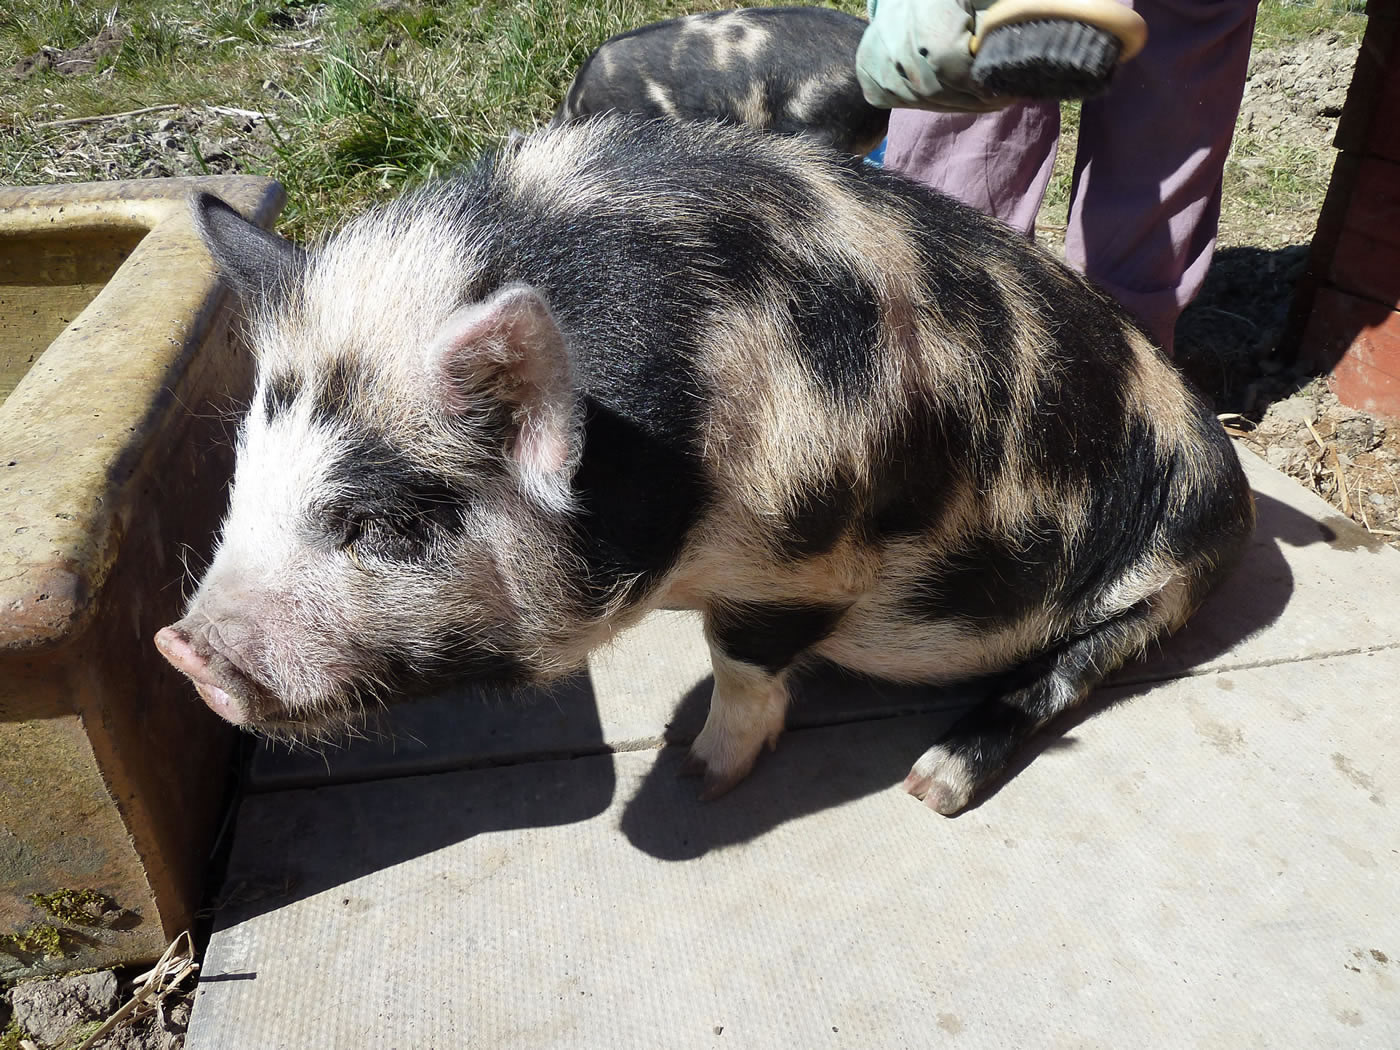 Picture of Geordie, our pet kunekune pig, getting brushed.